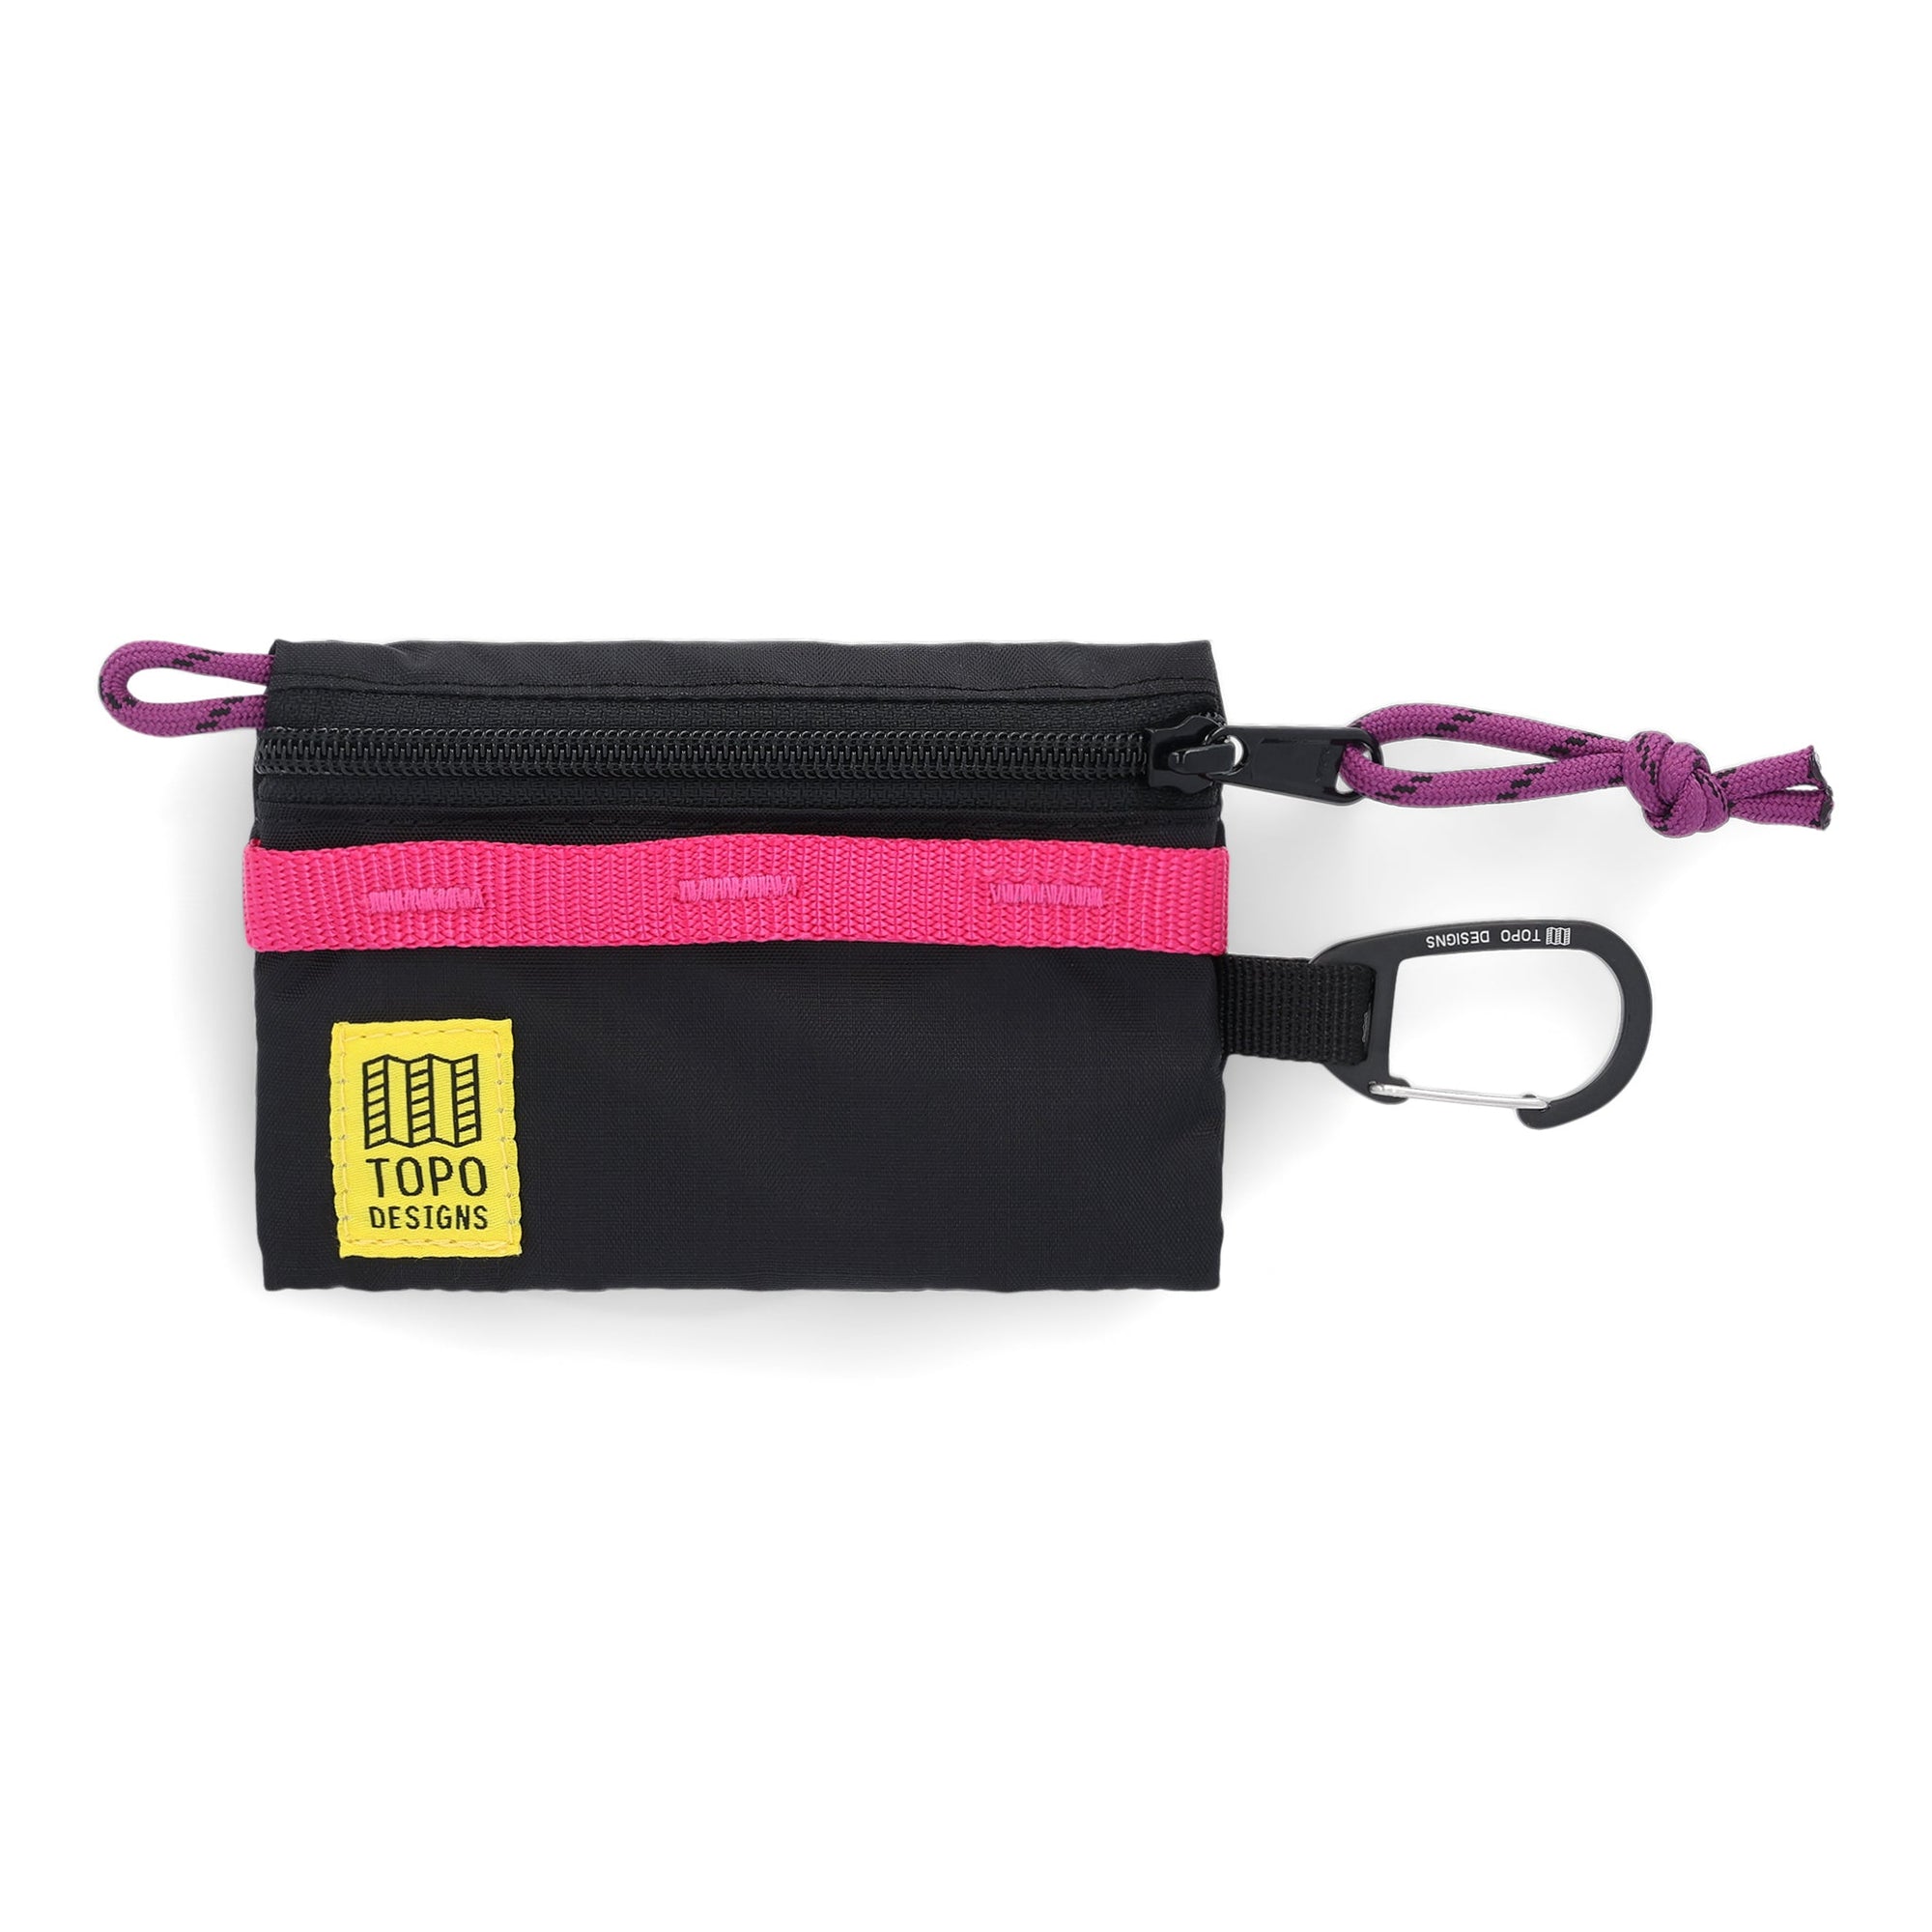 Topo Designs Accessory Bag Mountain Black/Black bags Topo Designs 